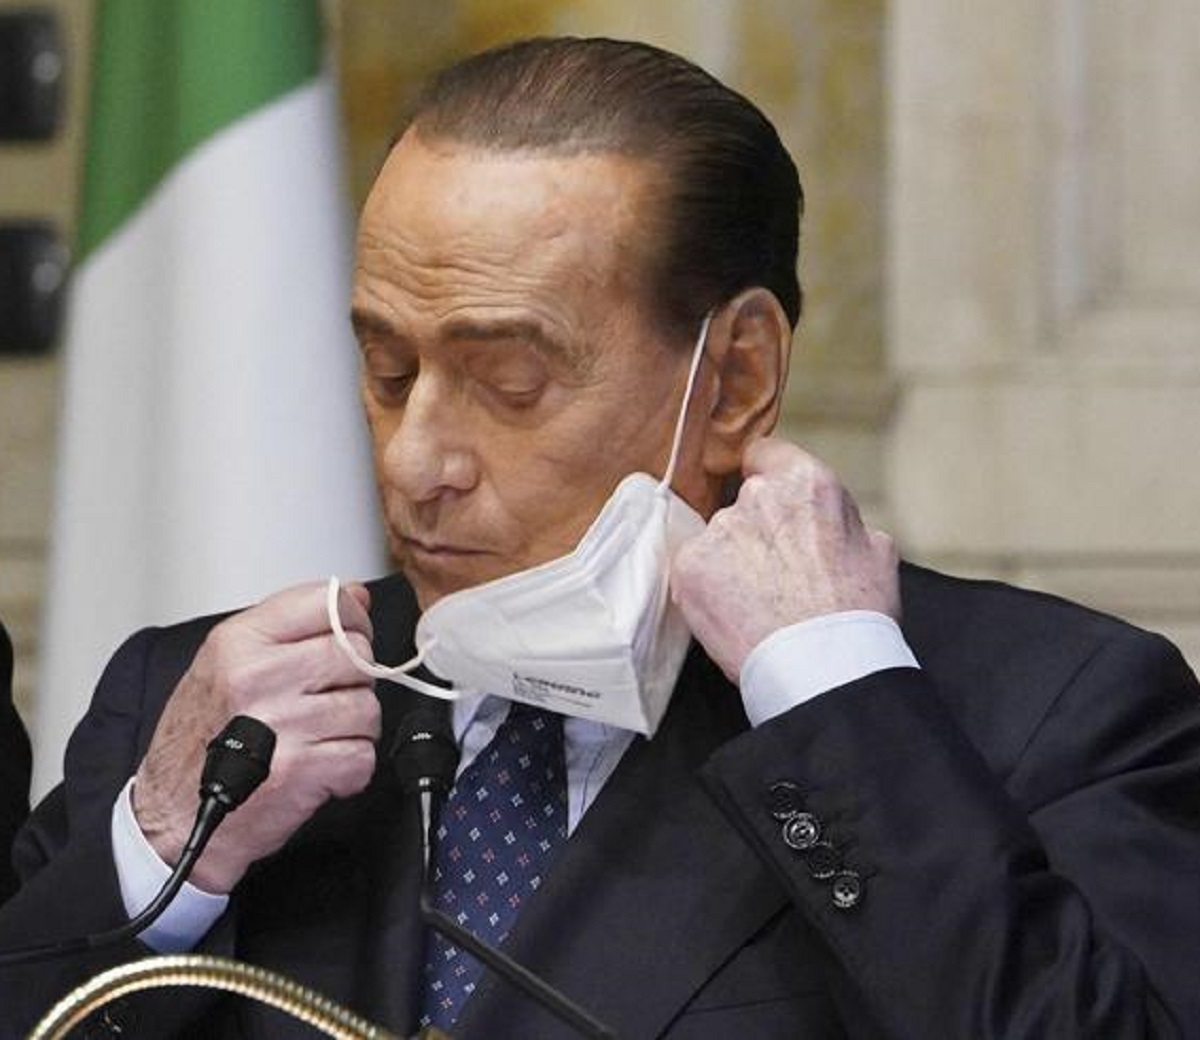 Silvio Berlusconi Marta Fascina dettaglio tatuaggio mano